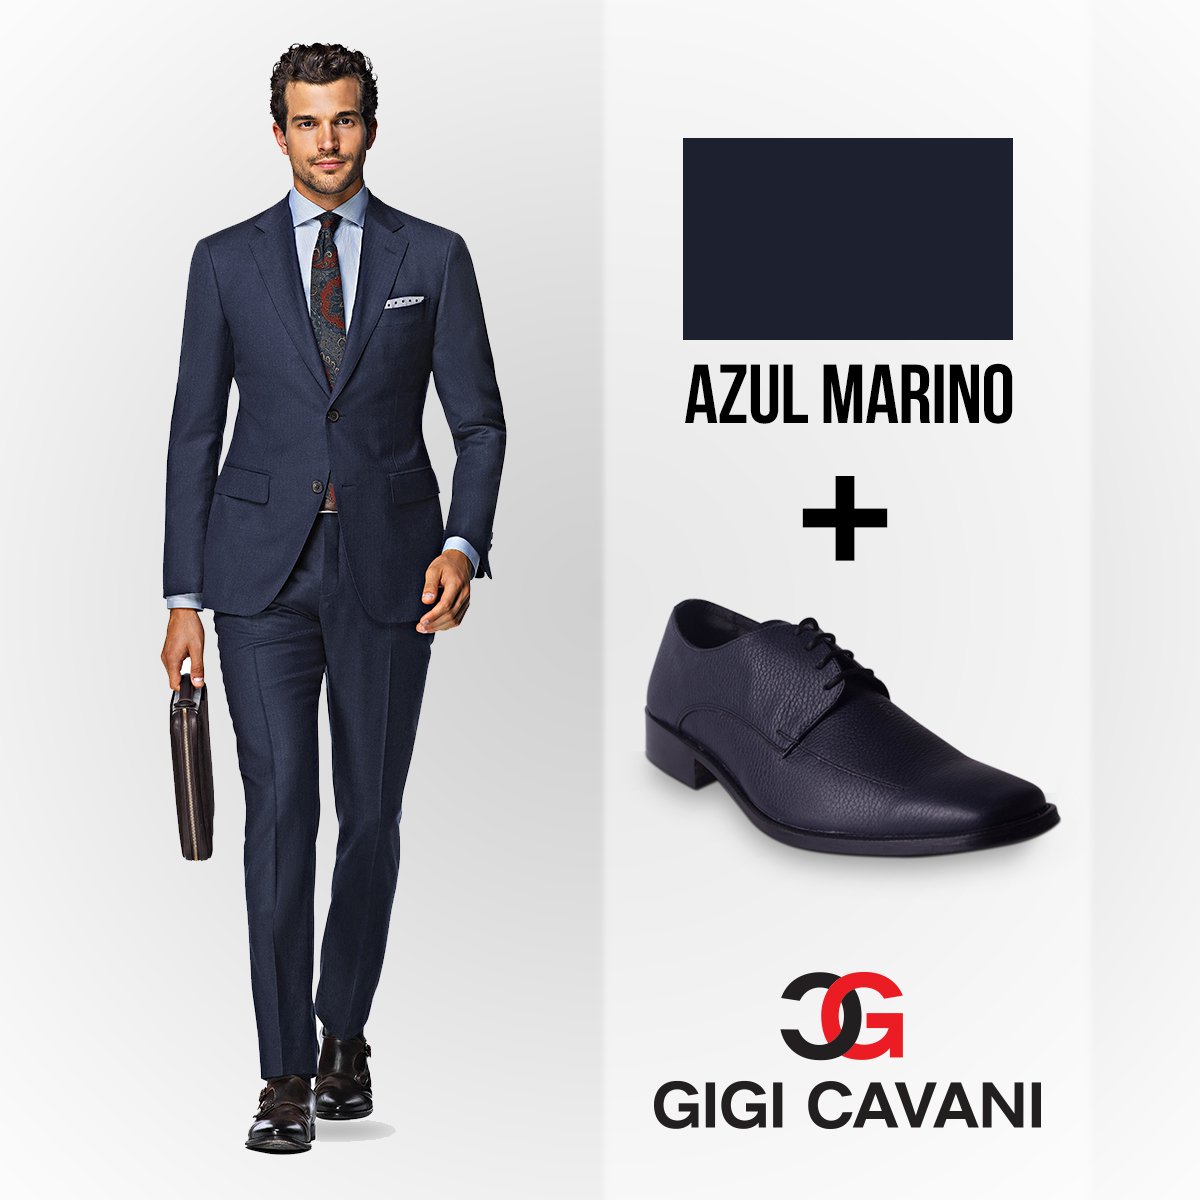 Gigi Cavani Twitter: "Puede traje azul marino con zapatos negros para tener un sobrio y elegante al mismo tiempo #Tips https://t.co/Dv1PY6v2QQ" / Twitter